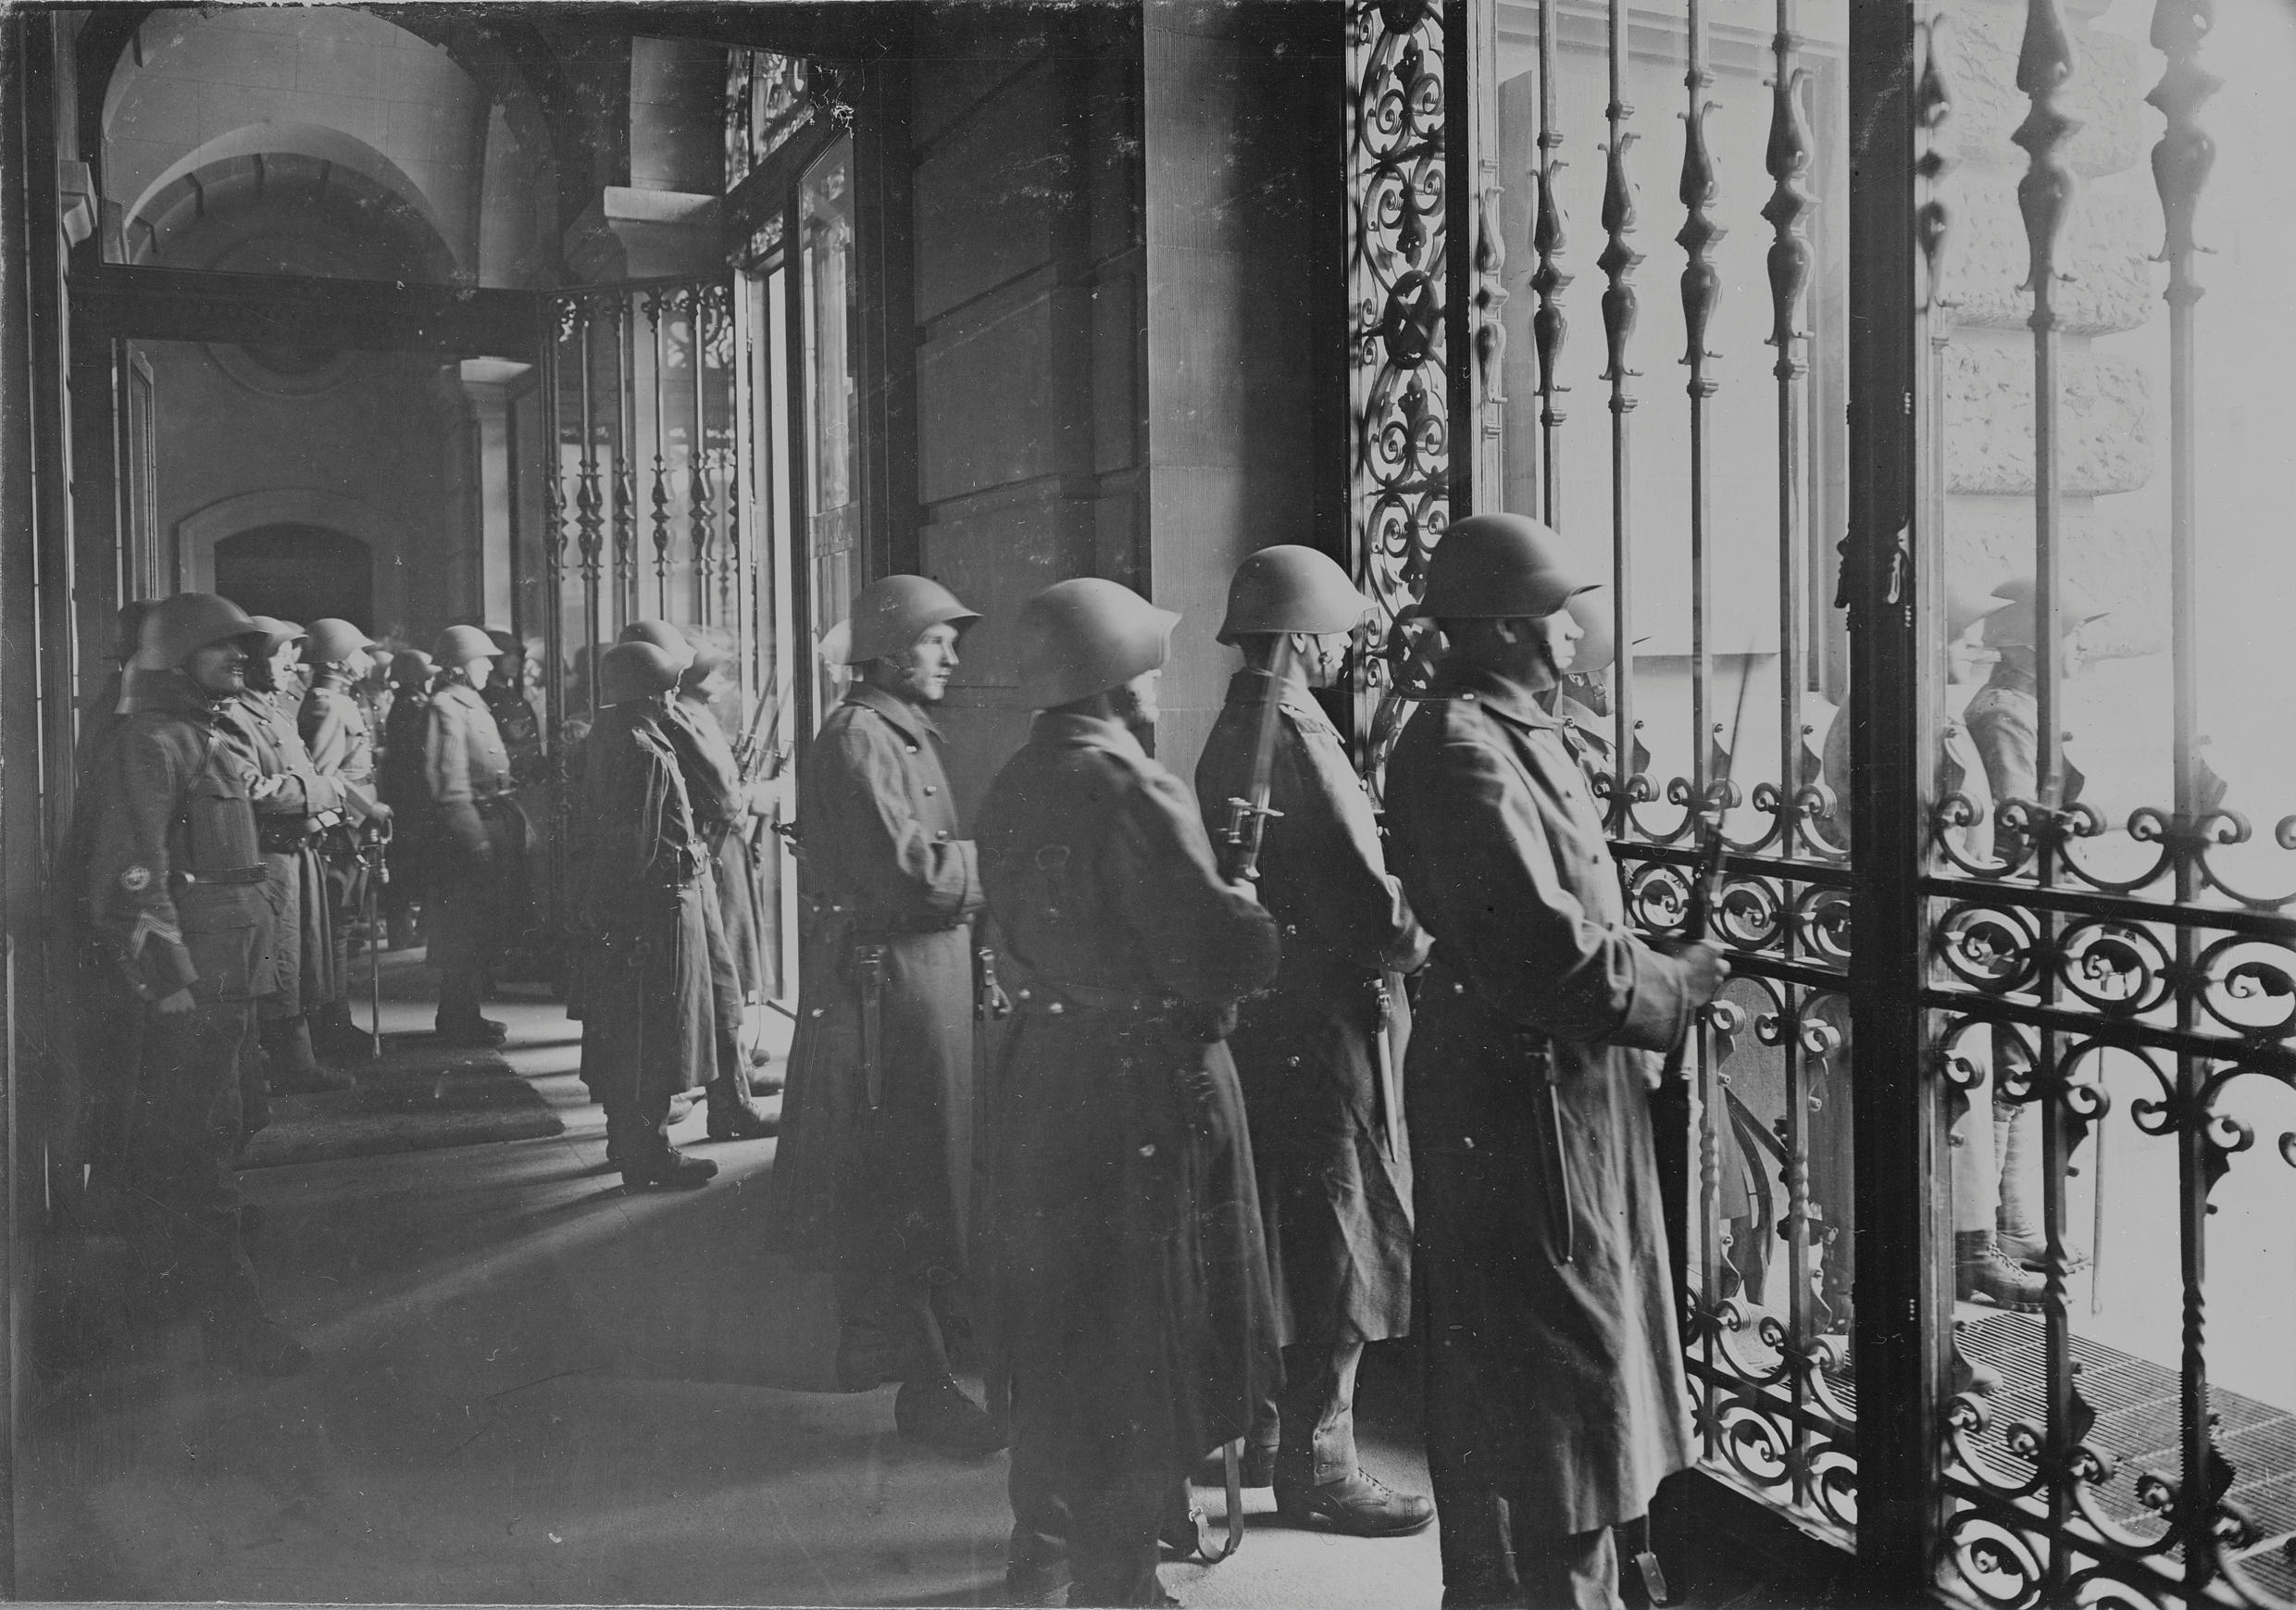 جنود تقف في مدخل بناية وينظرون إلى الخارج